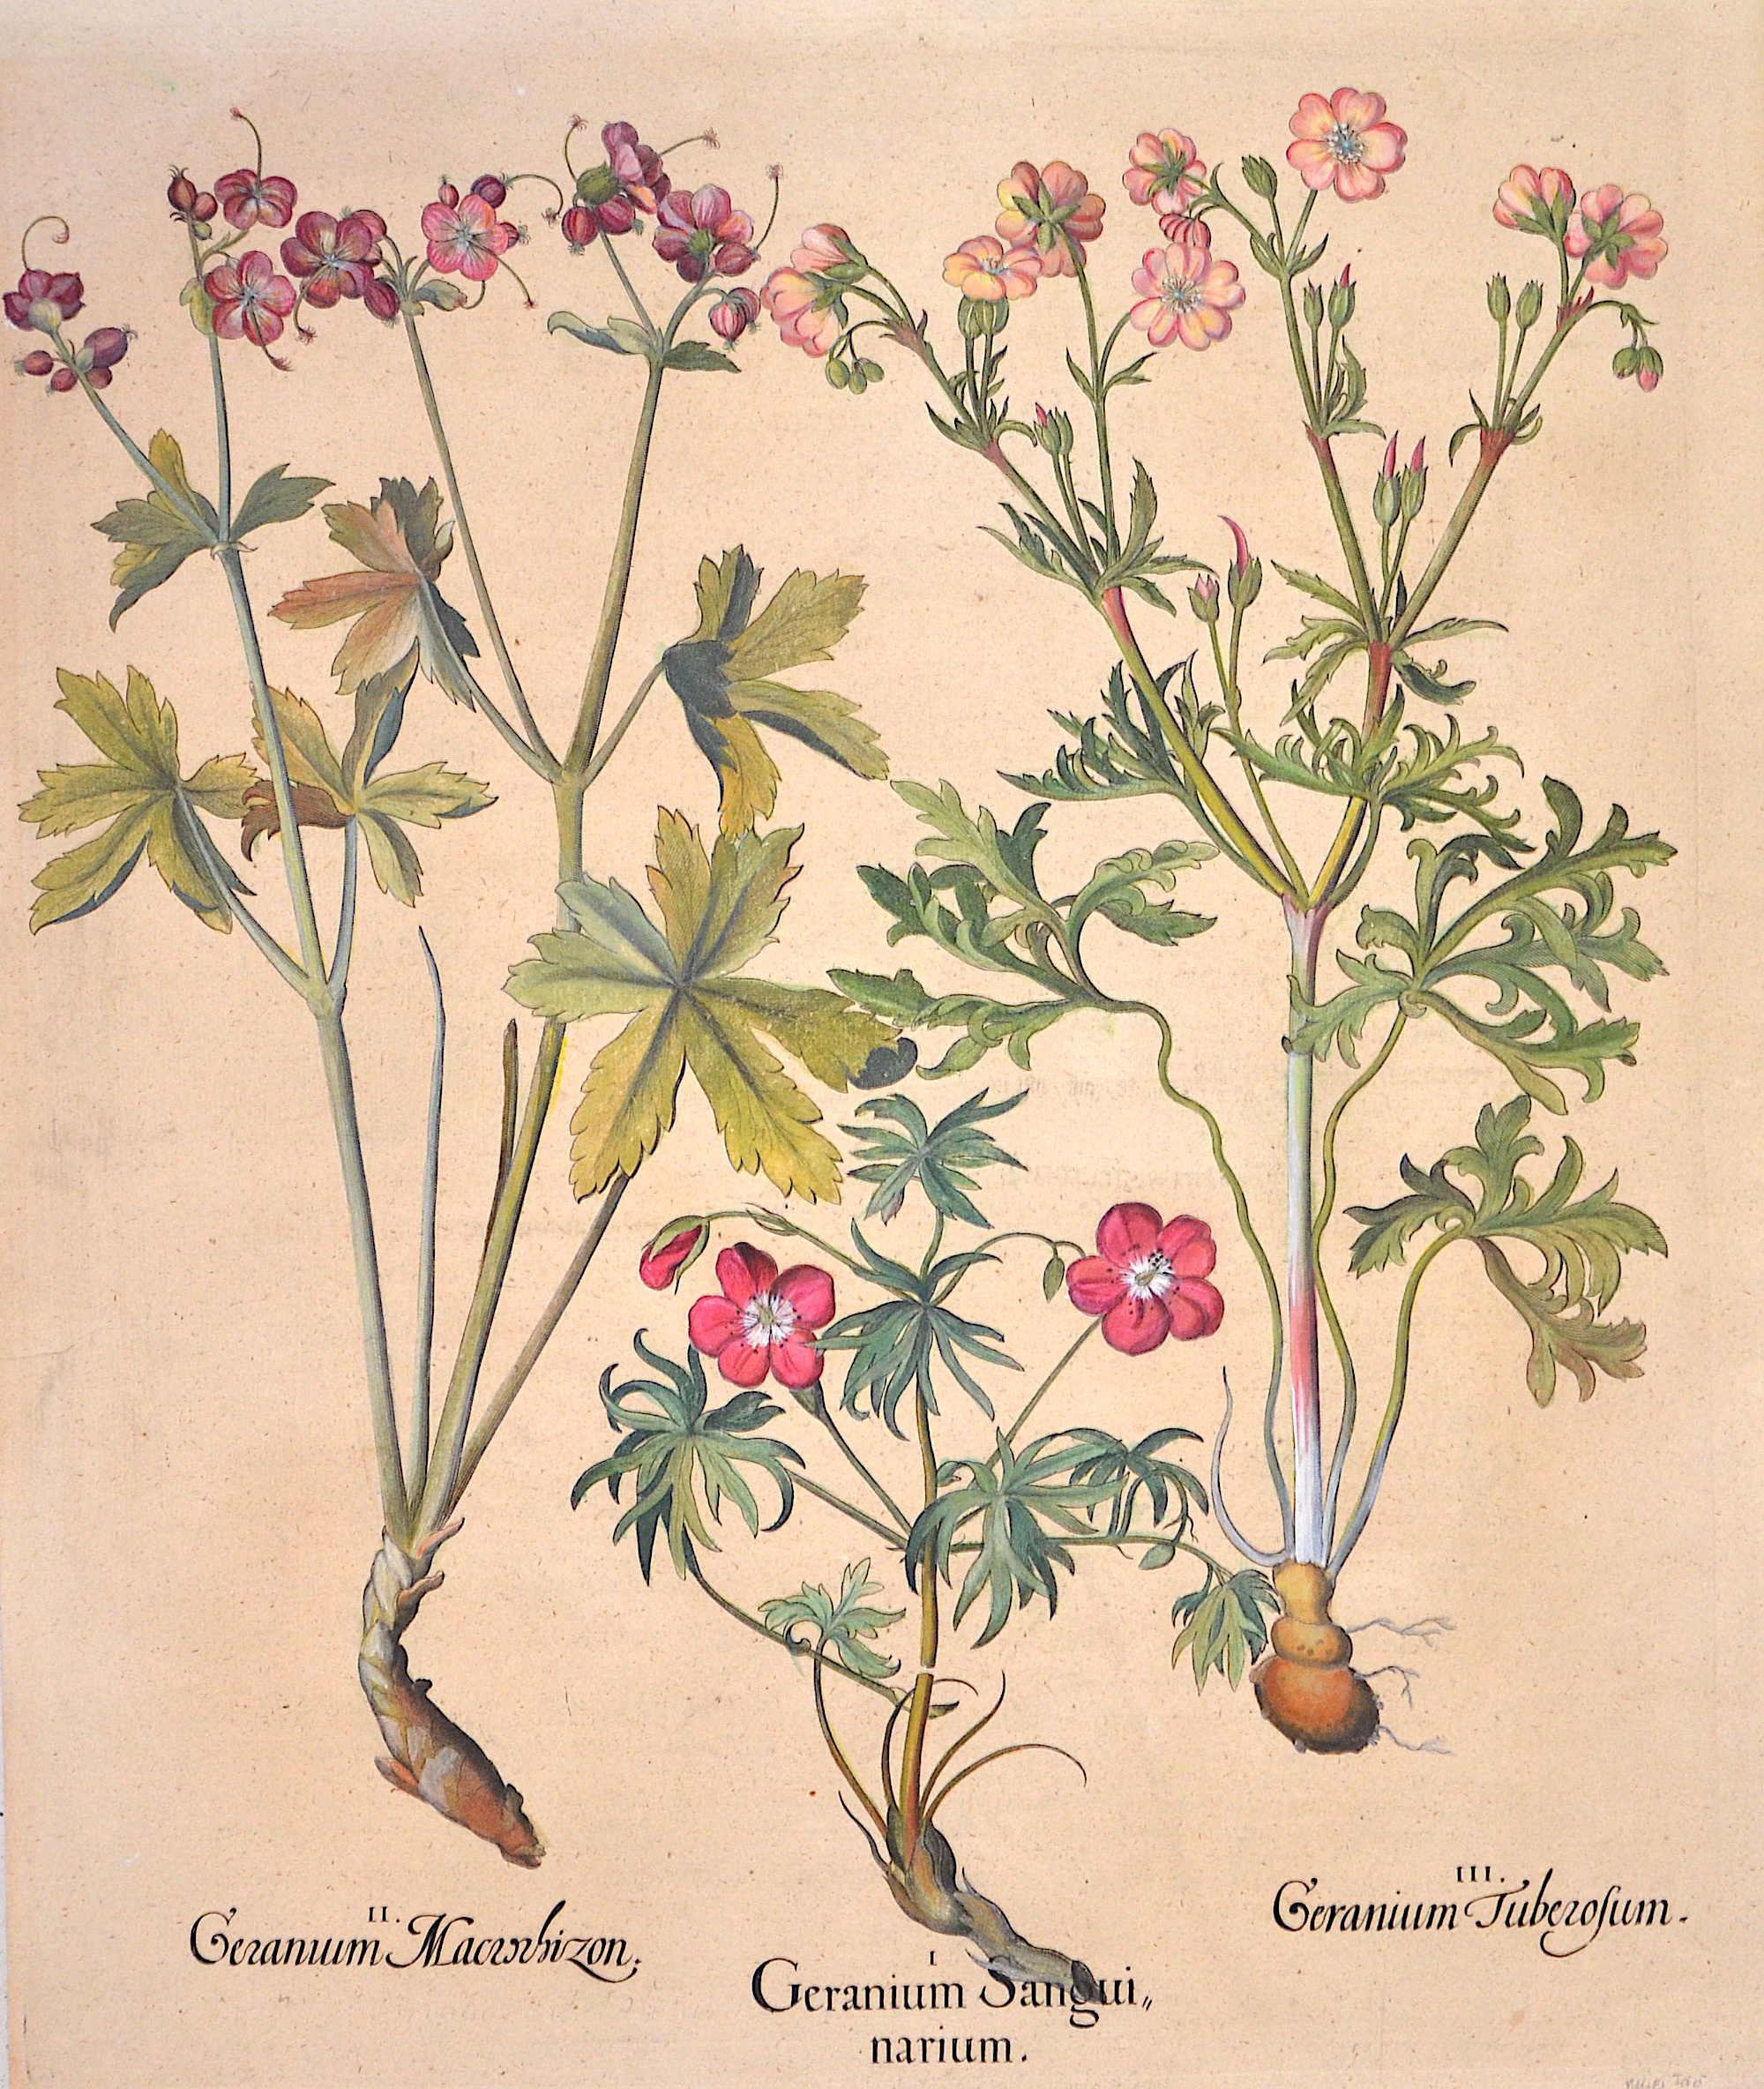 Besler  II. Geranum Macrochizon. I. Geranium Sanguinarium. III.Geranium Tuberosum.